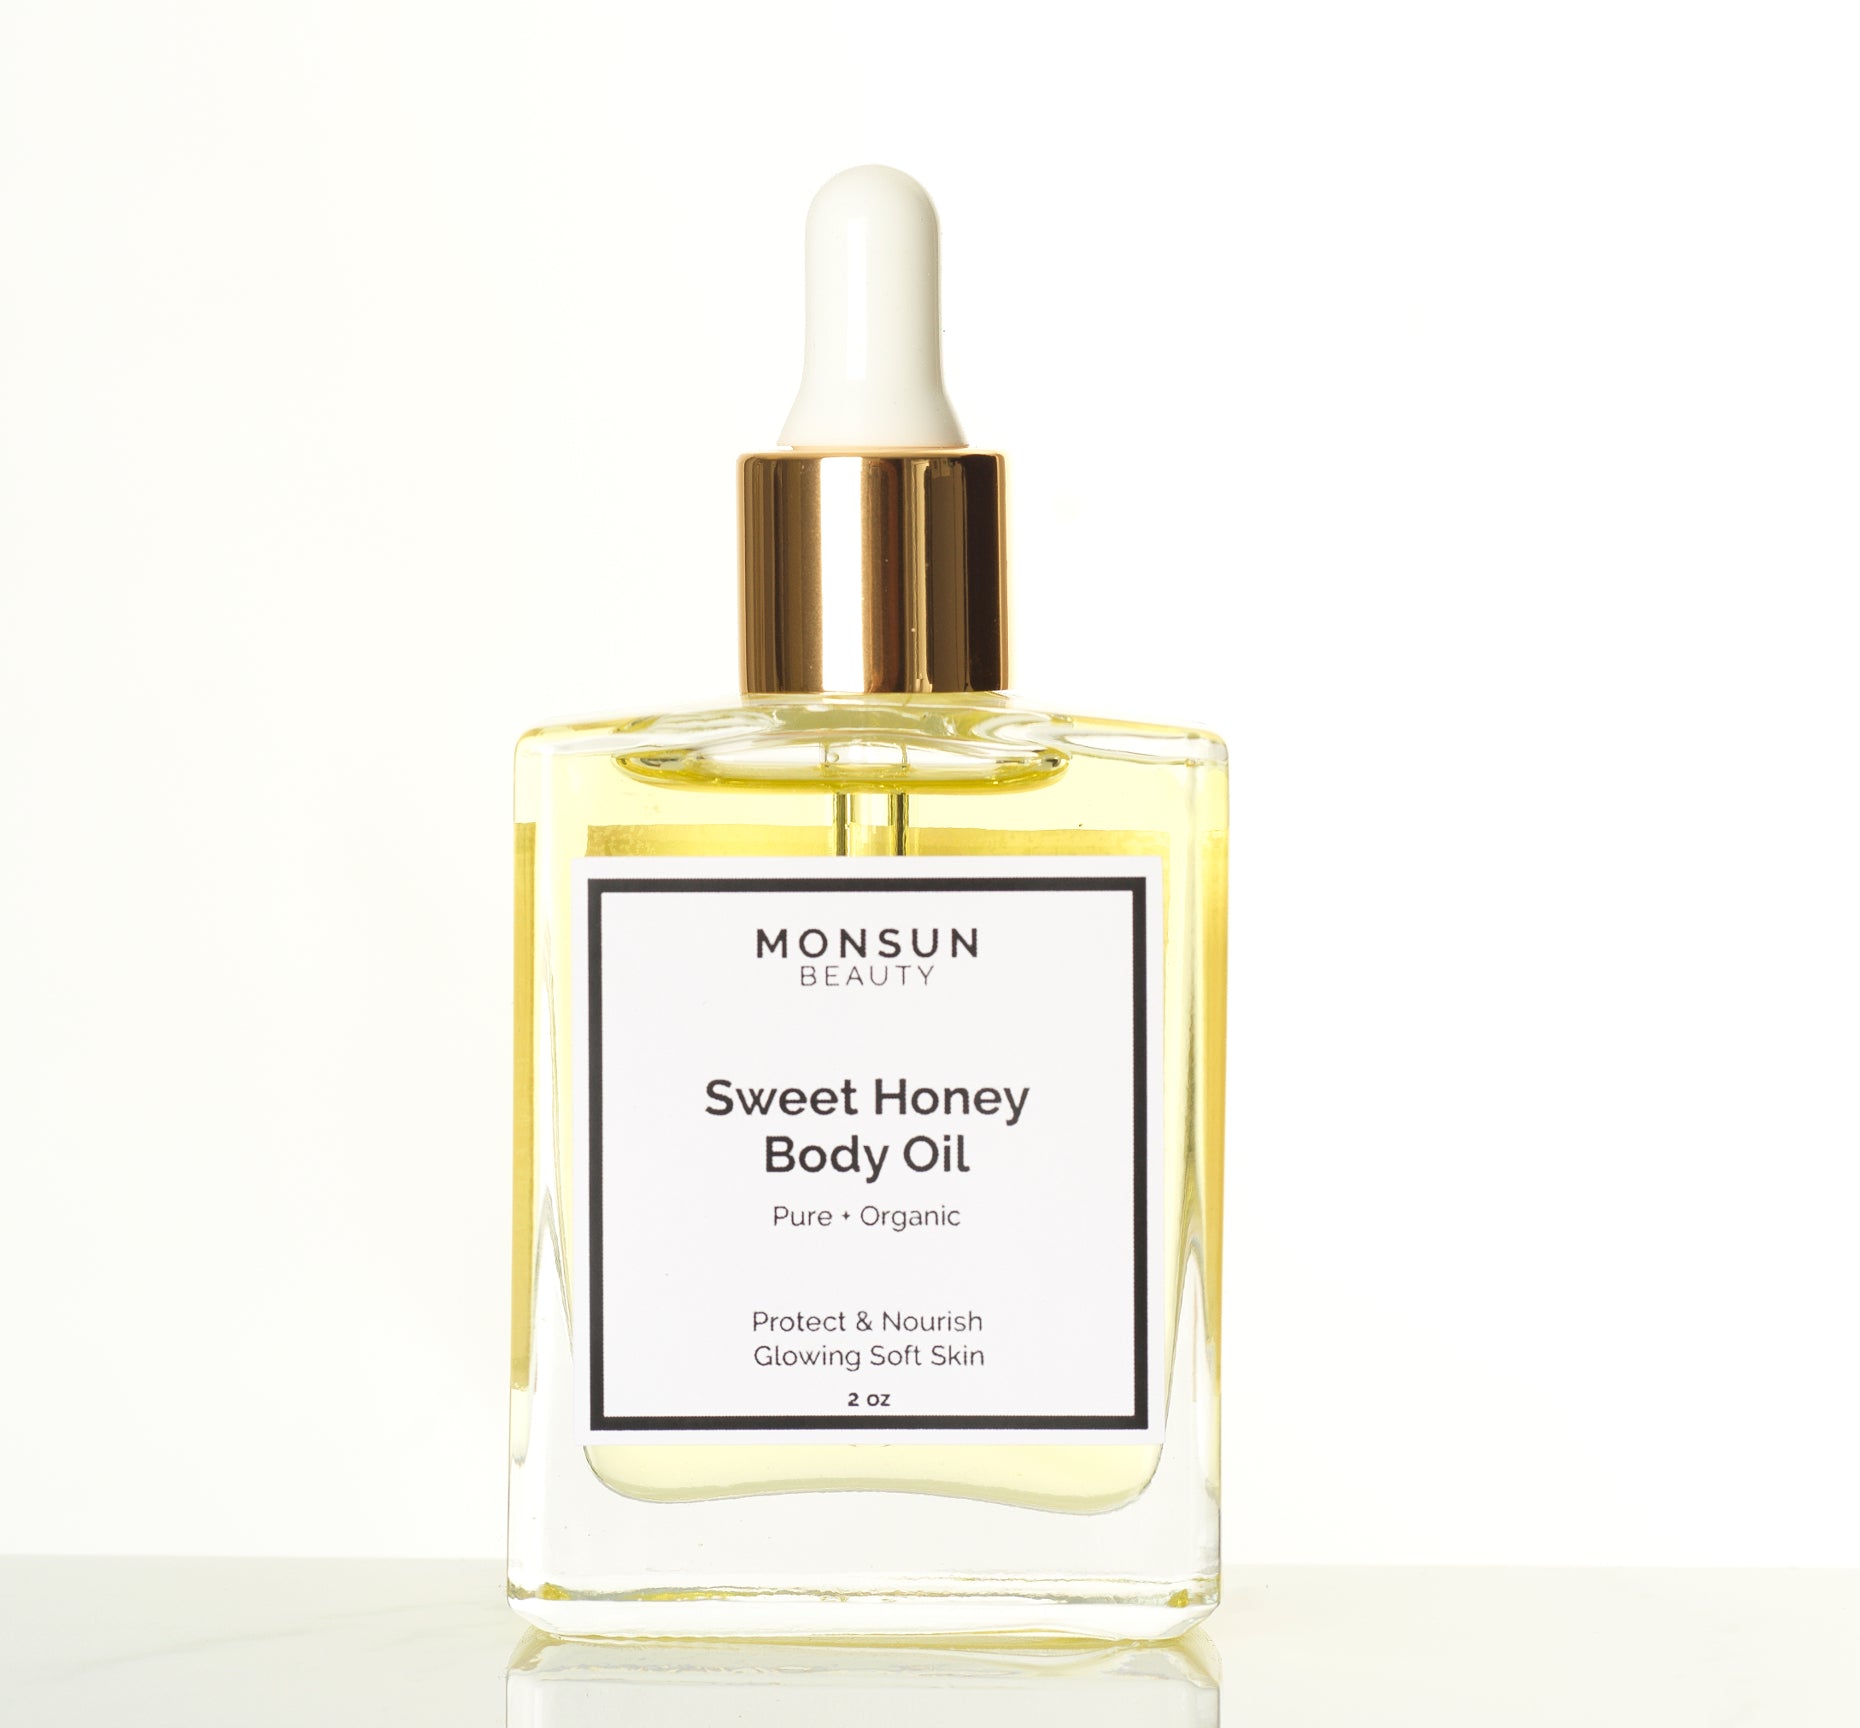 Sweet honey body oil